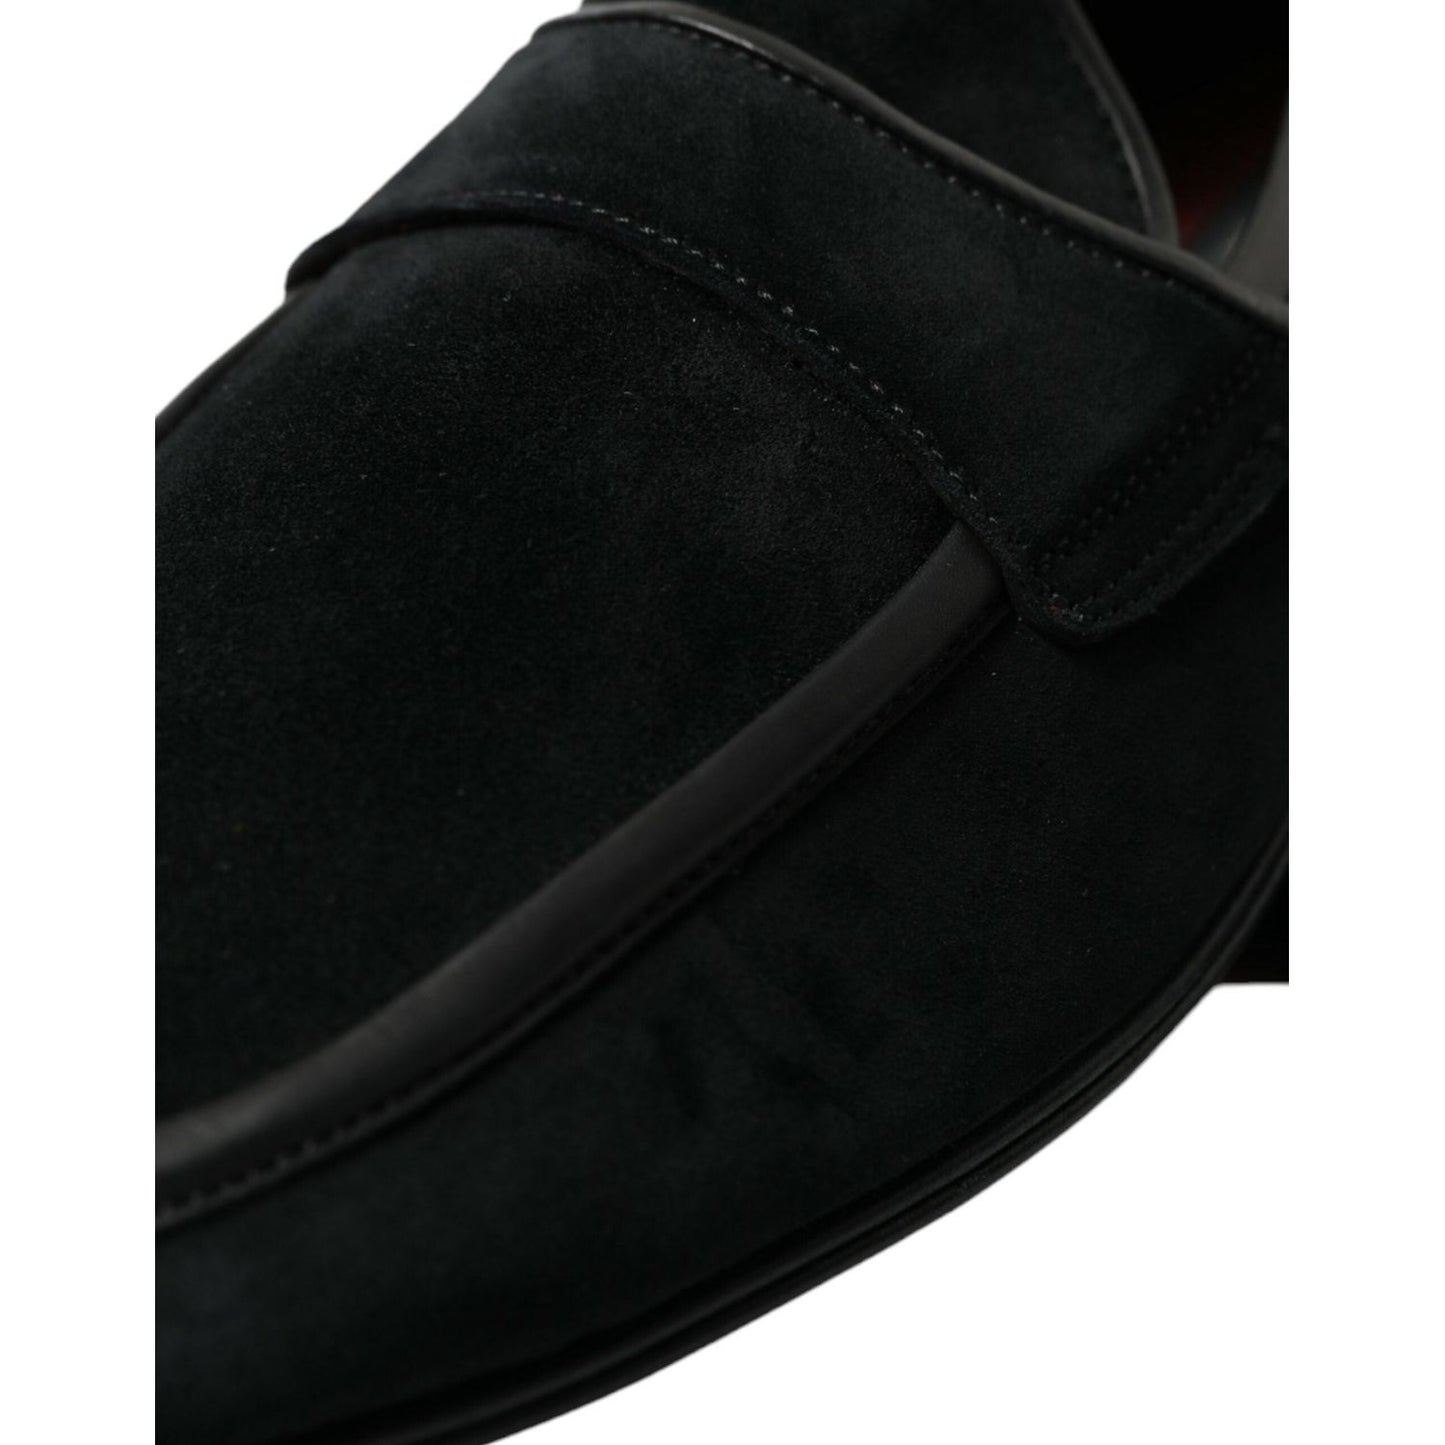 Dolce & Gabbana Elegant Velvet Black Loafers for Men black-velvet-slip-on-loafers-dress-shoes